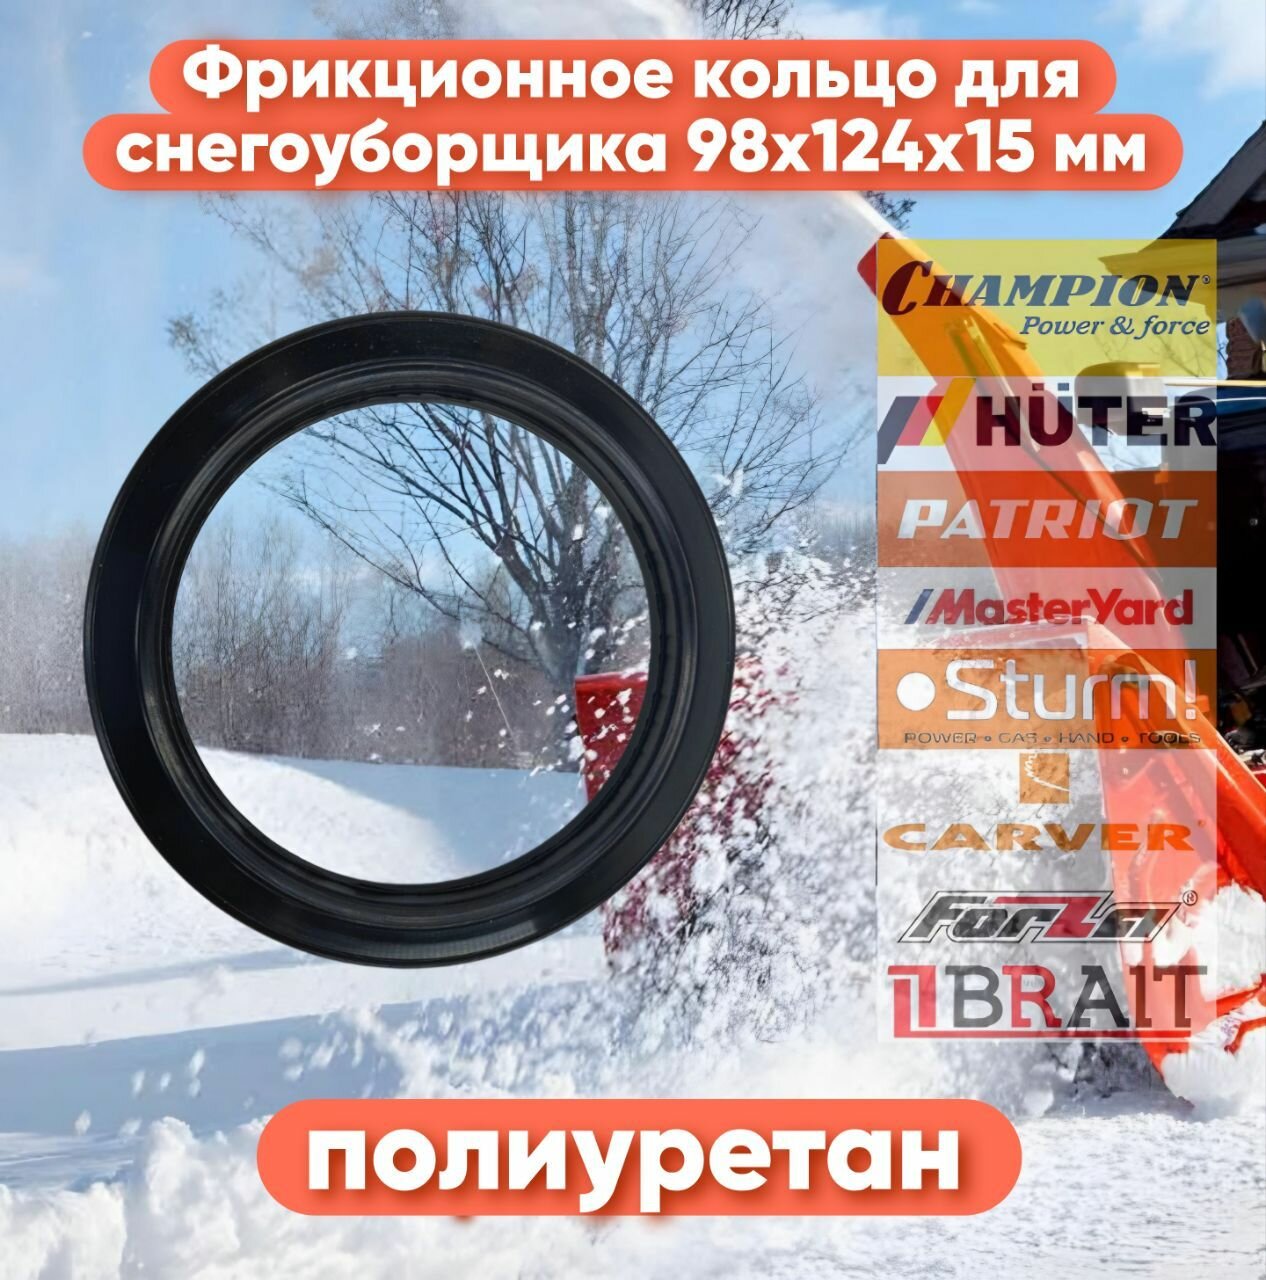 Фрикционное кольцо (Полиуретан) 98x124x15 мм для снегоуборщиков Champion Huter Hyundai Patriot MasterYard Carver Парма и другие